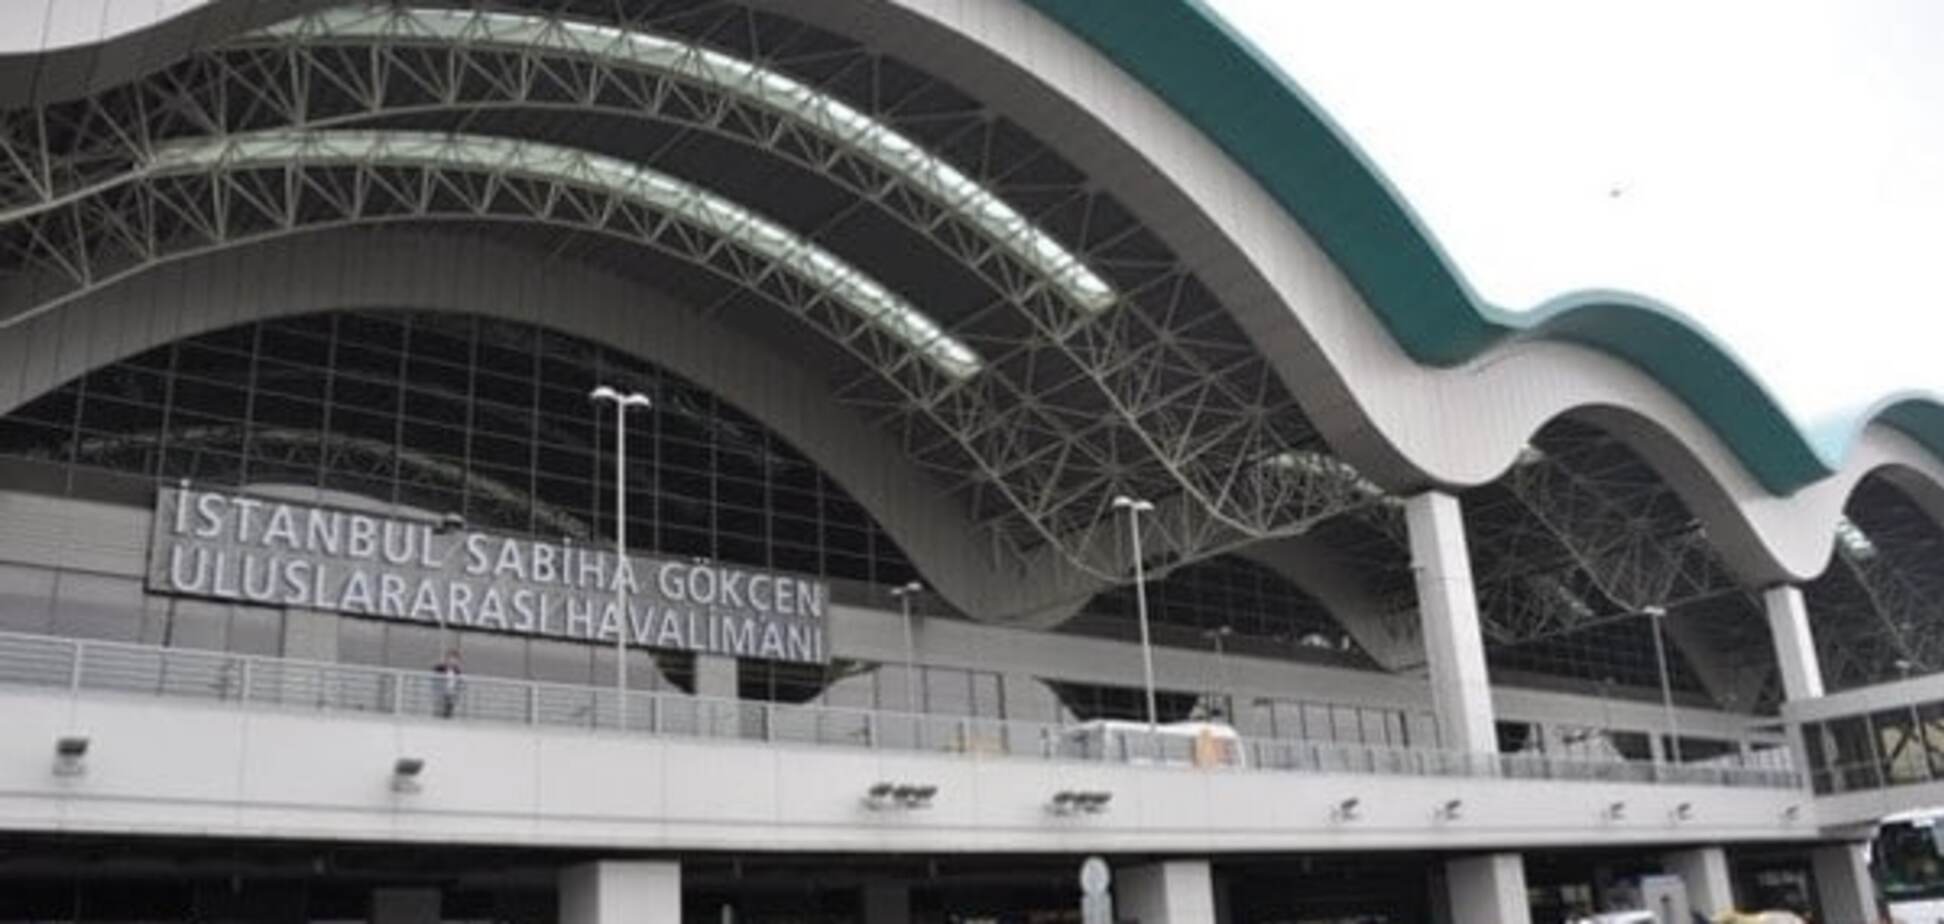 Один человек скончался от взрыва в аэропорту Стамбула